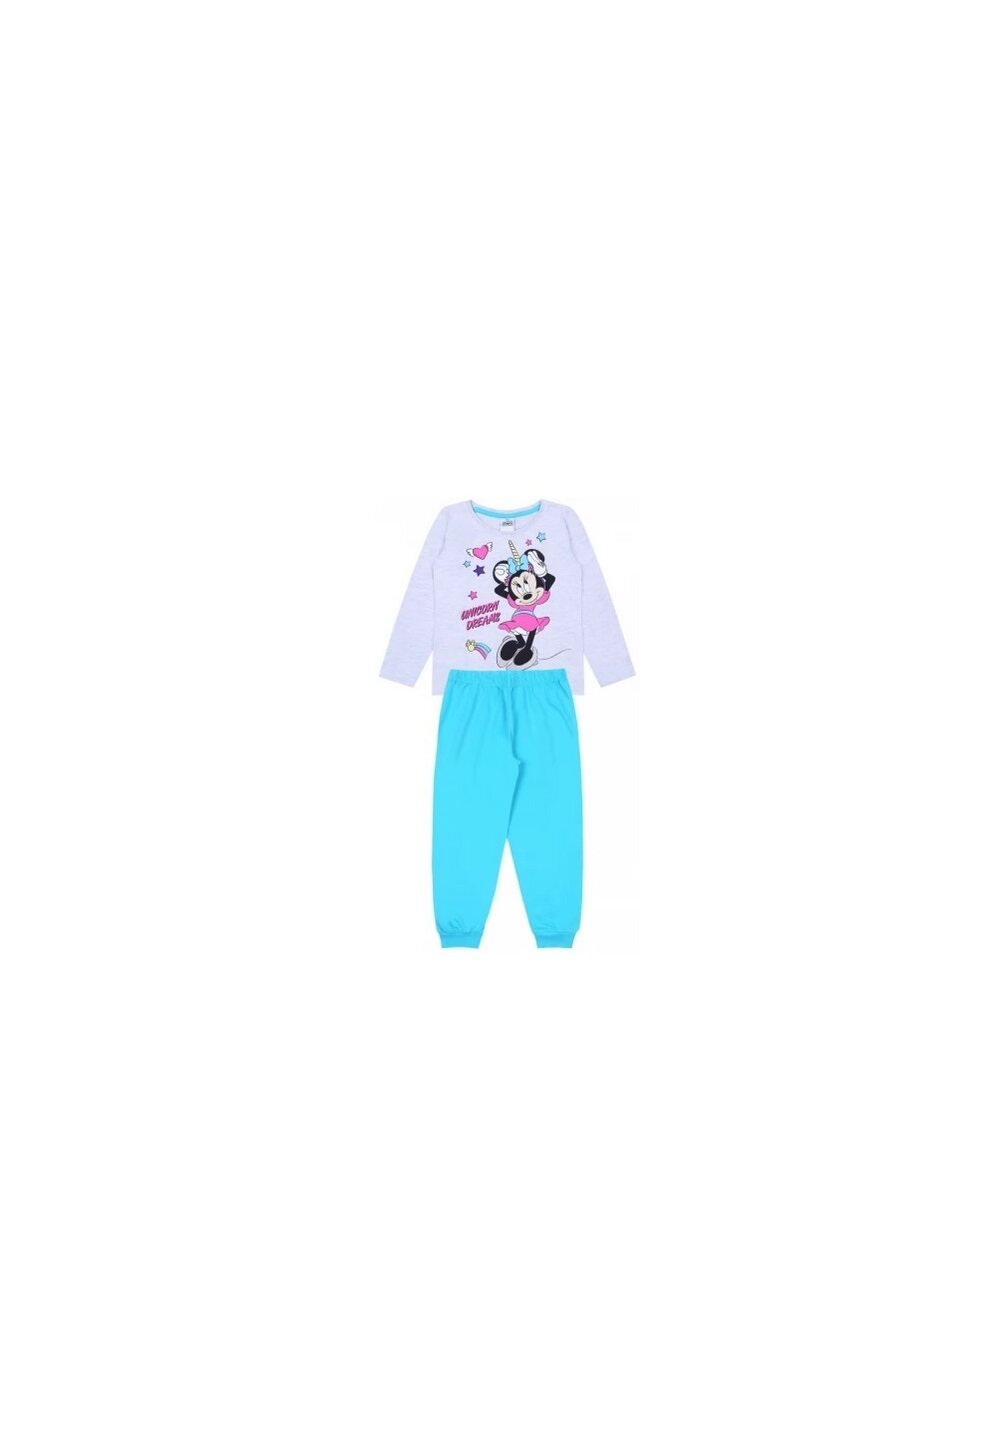 Pijama fete, Minnie Unicorn Dreams, turcoaz cu gri imagine